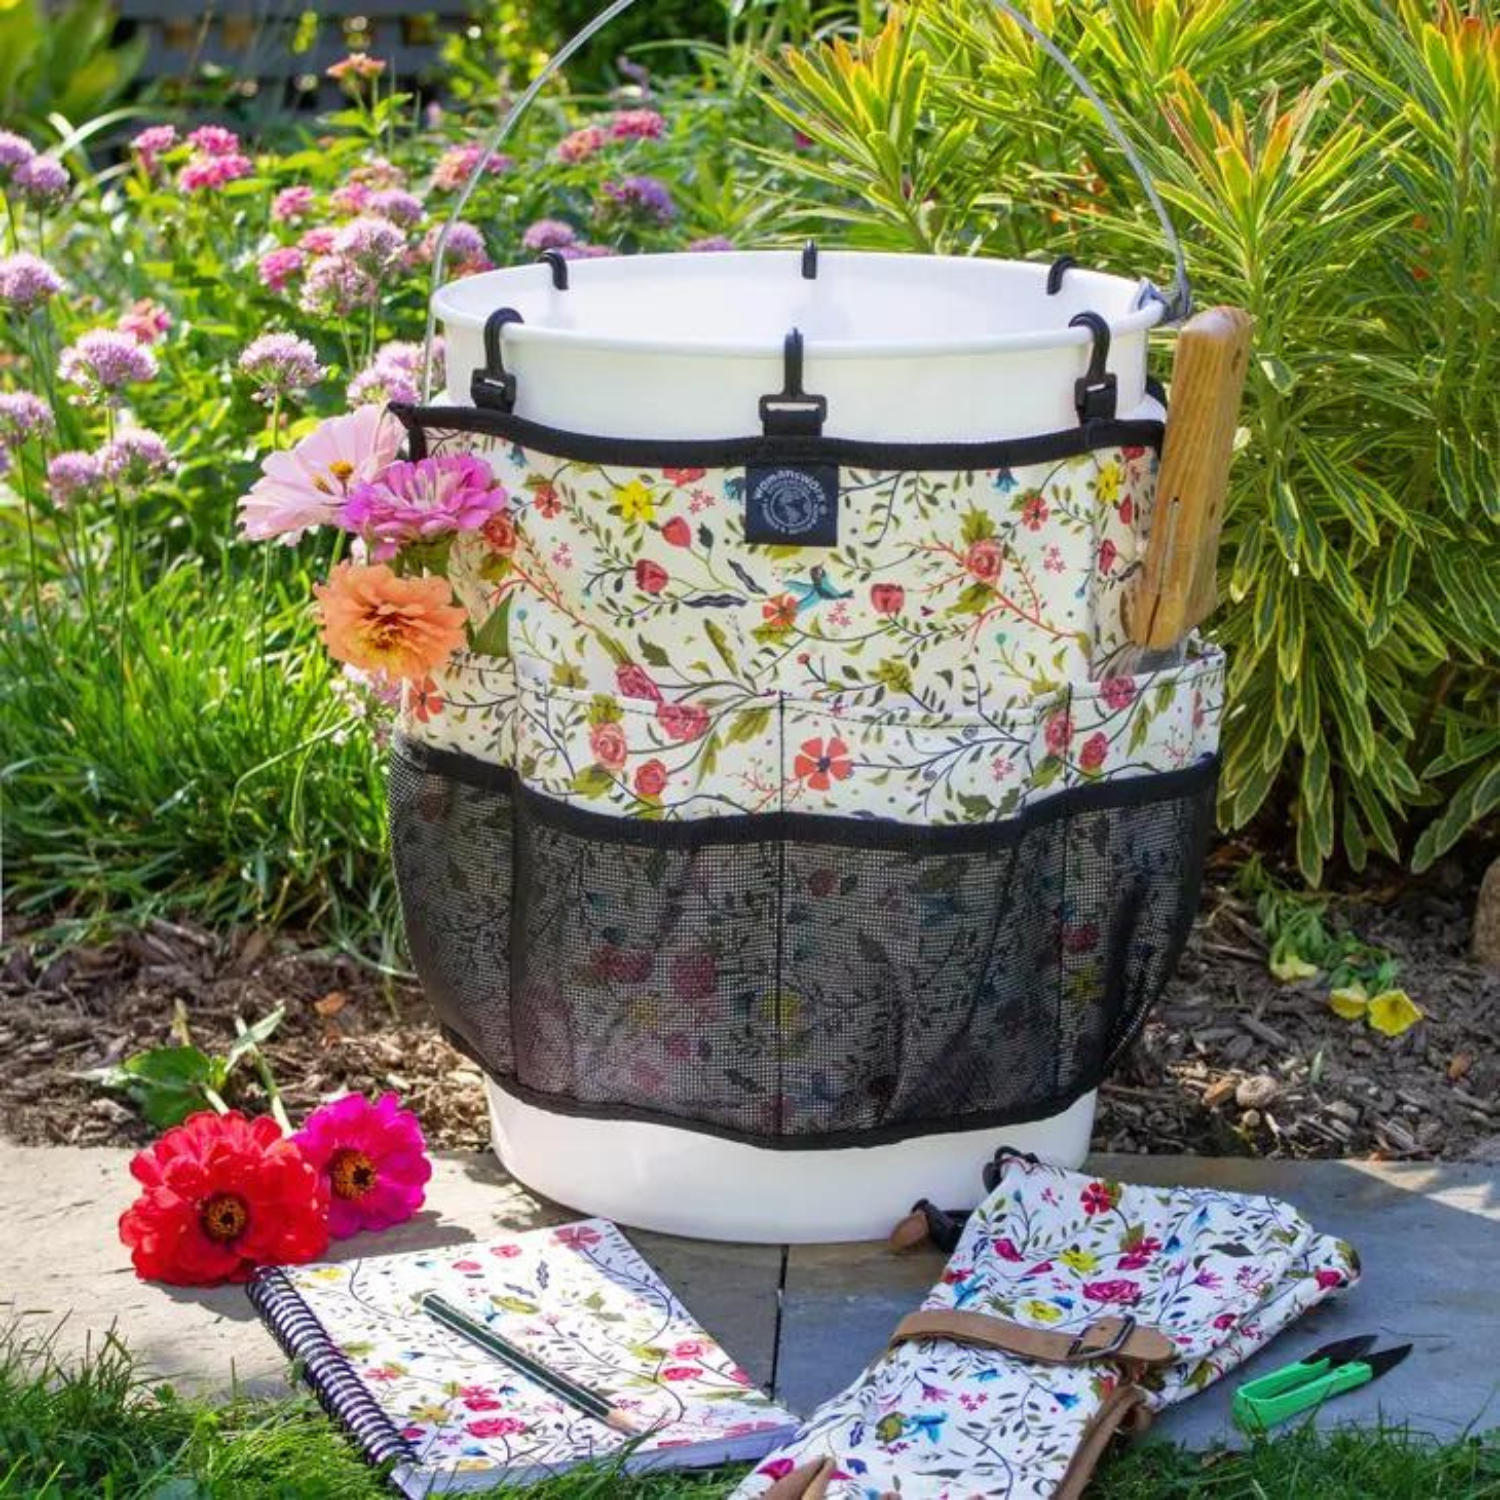 2 Gallon Bucket Organizer – Truly Garden